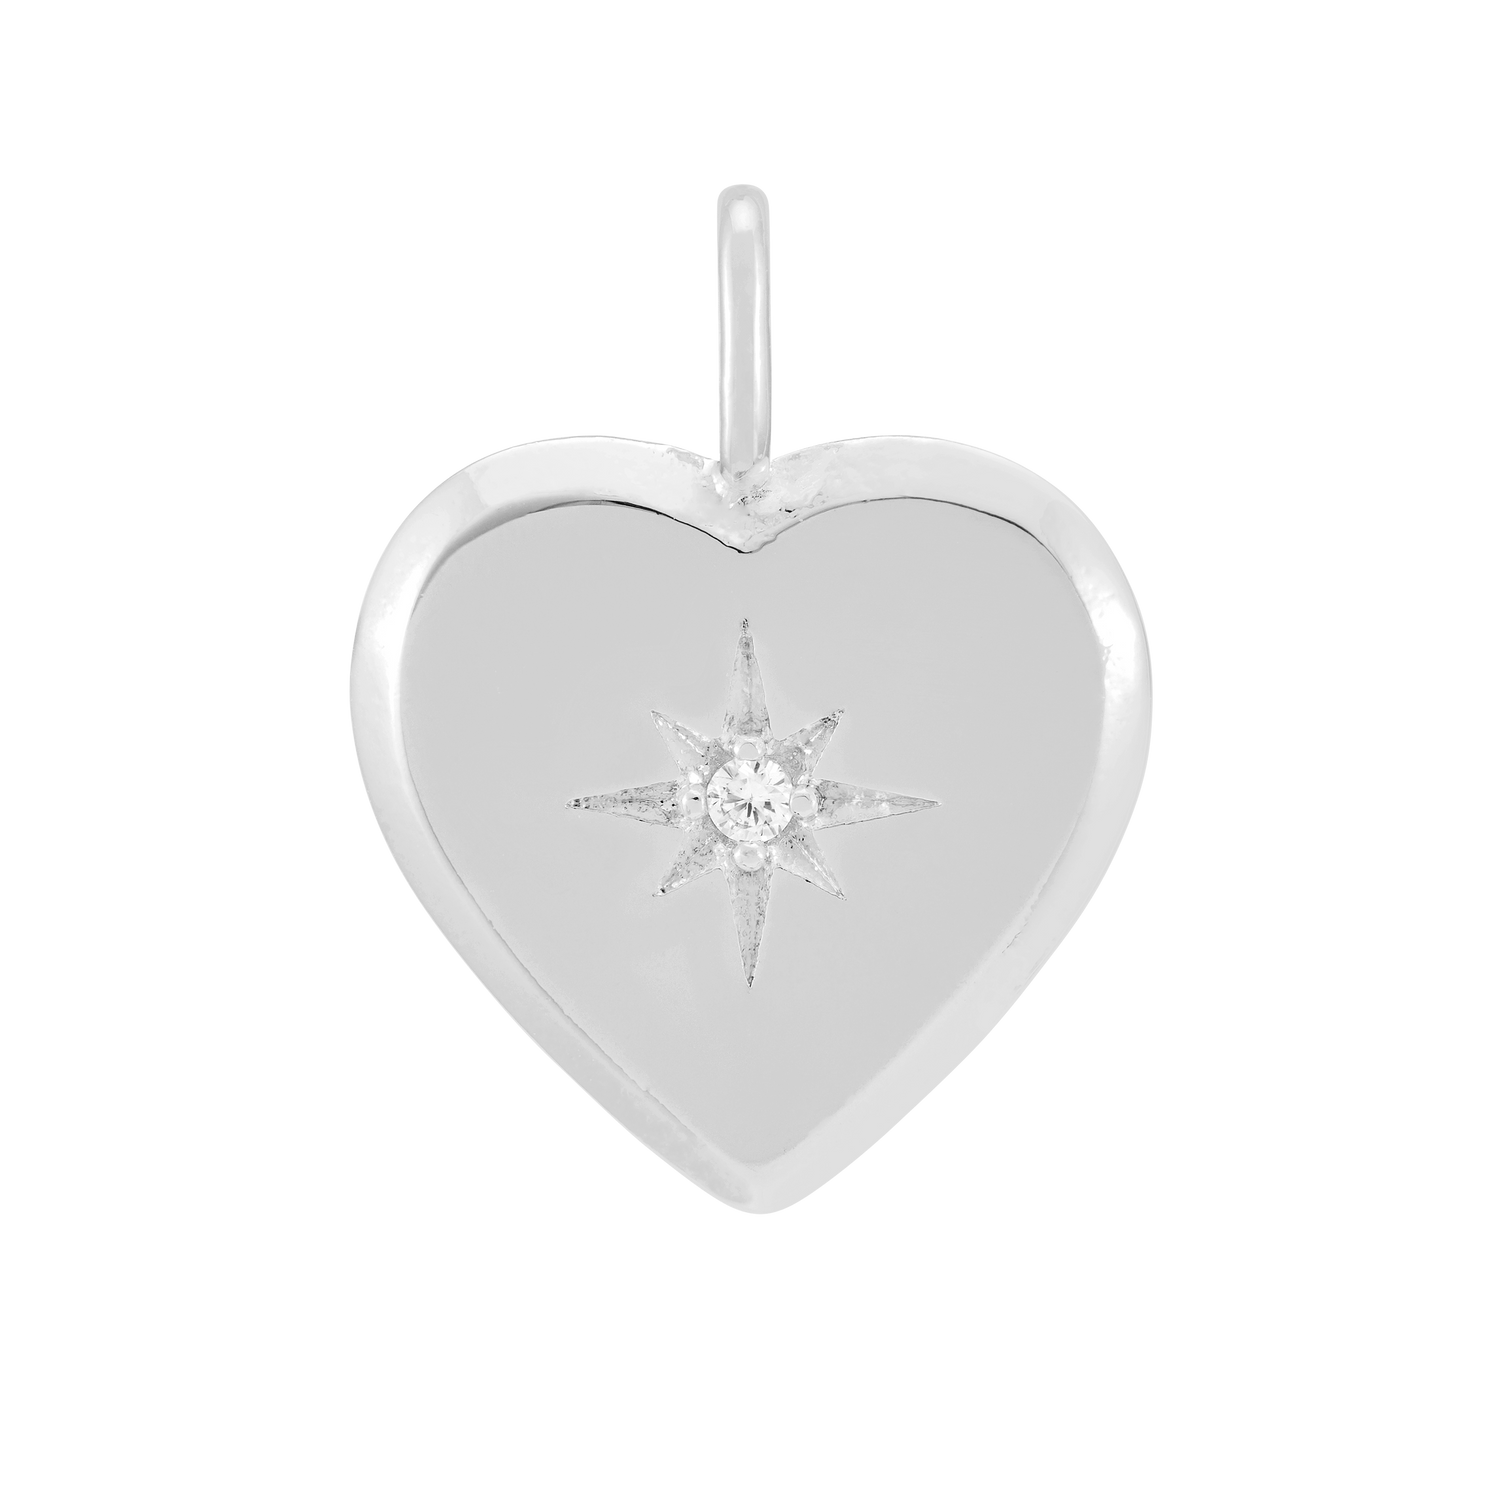 customiser-image customiser-engrave-heart